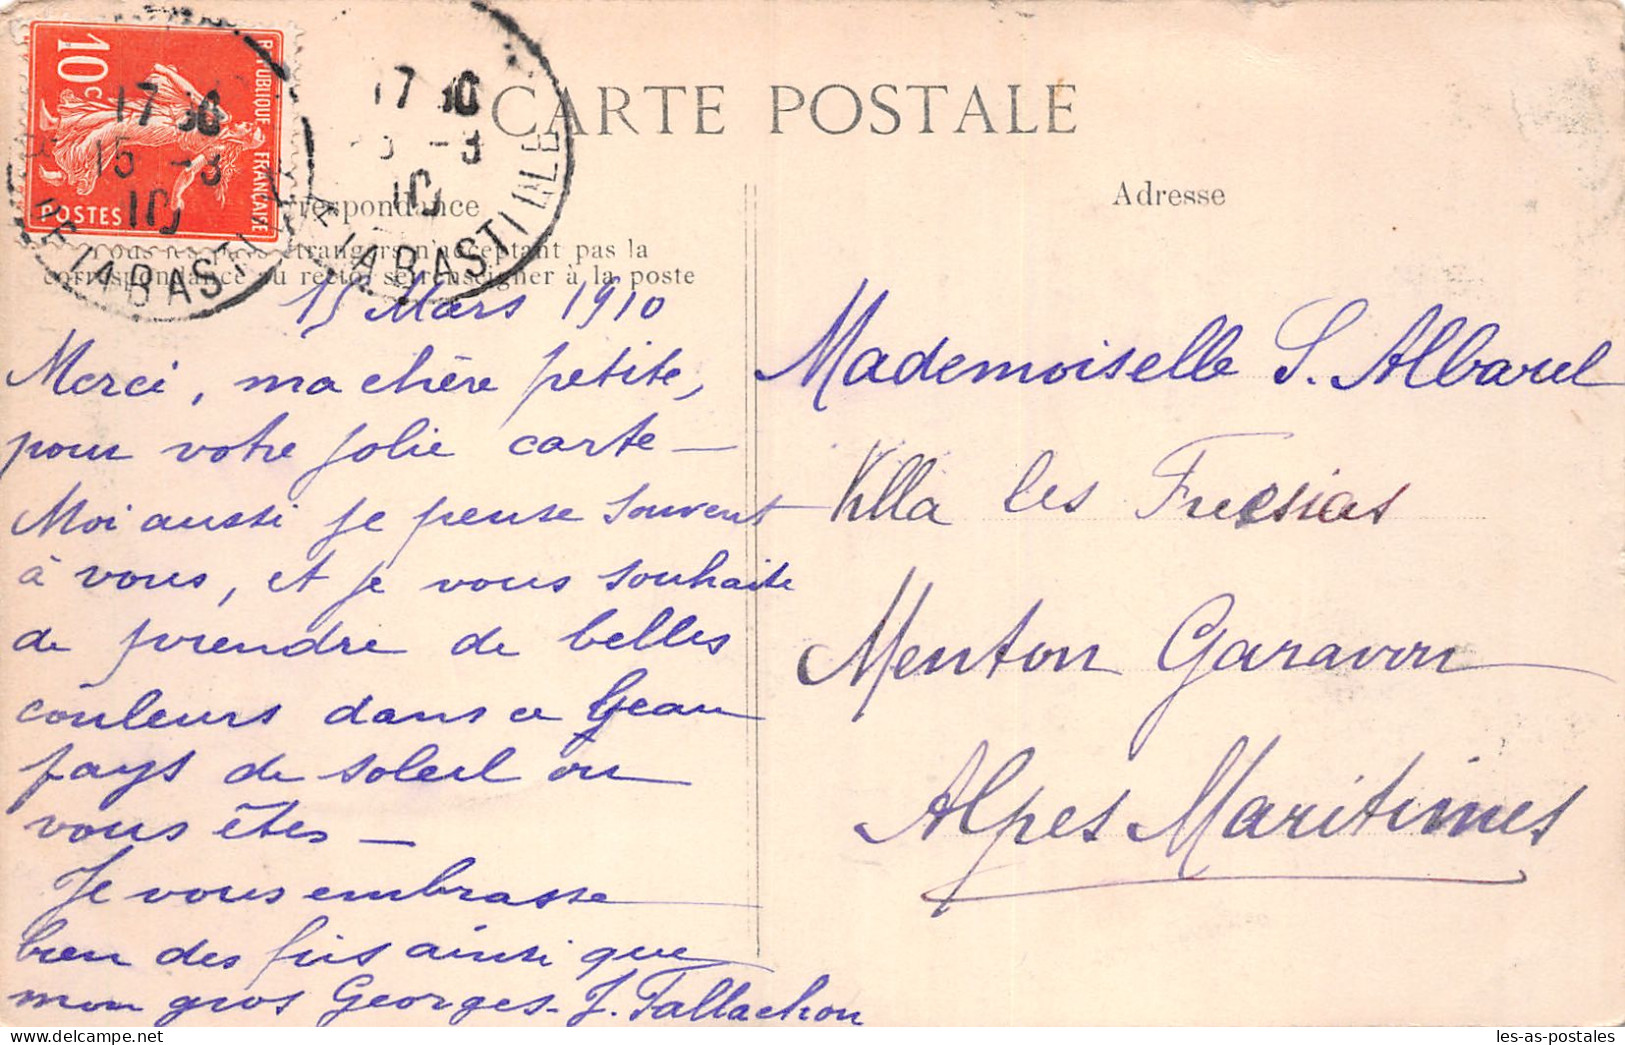 75 PARIS CRUE PONT SULLY - La Crecida Del Sena De 1910